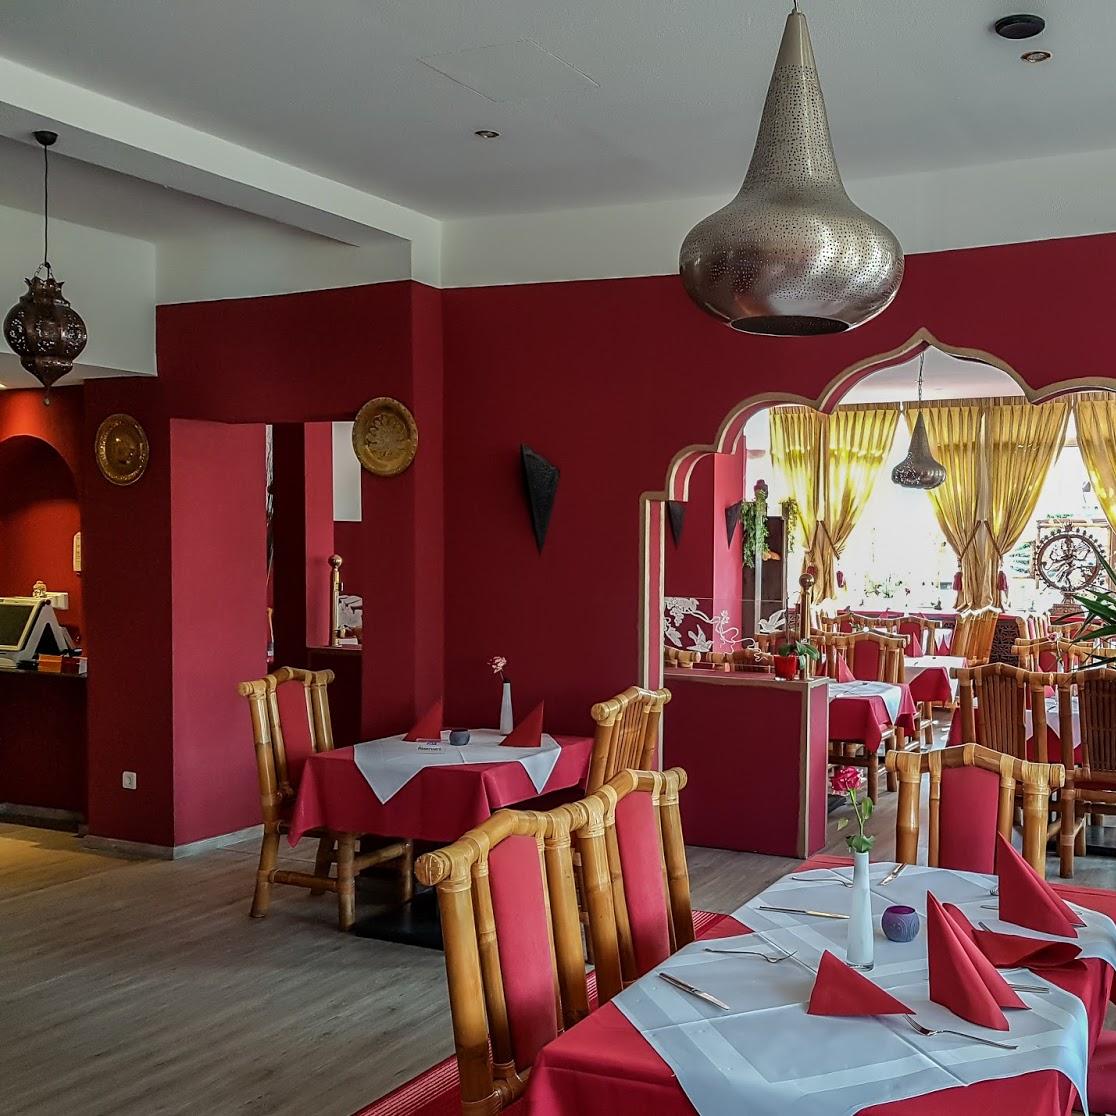 Restaurant "Safran - Indisches Spezialitätenrestaurant" in Bremen